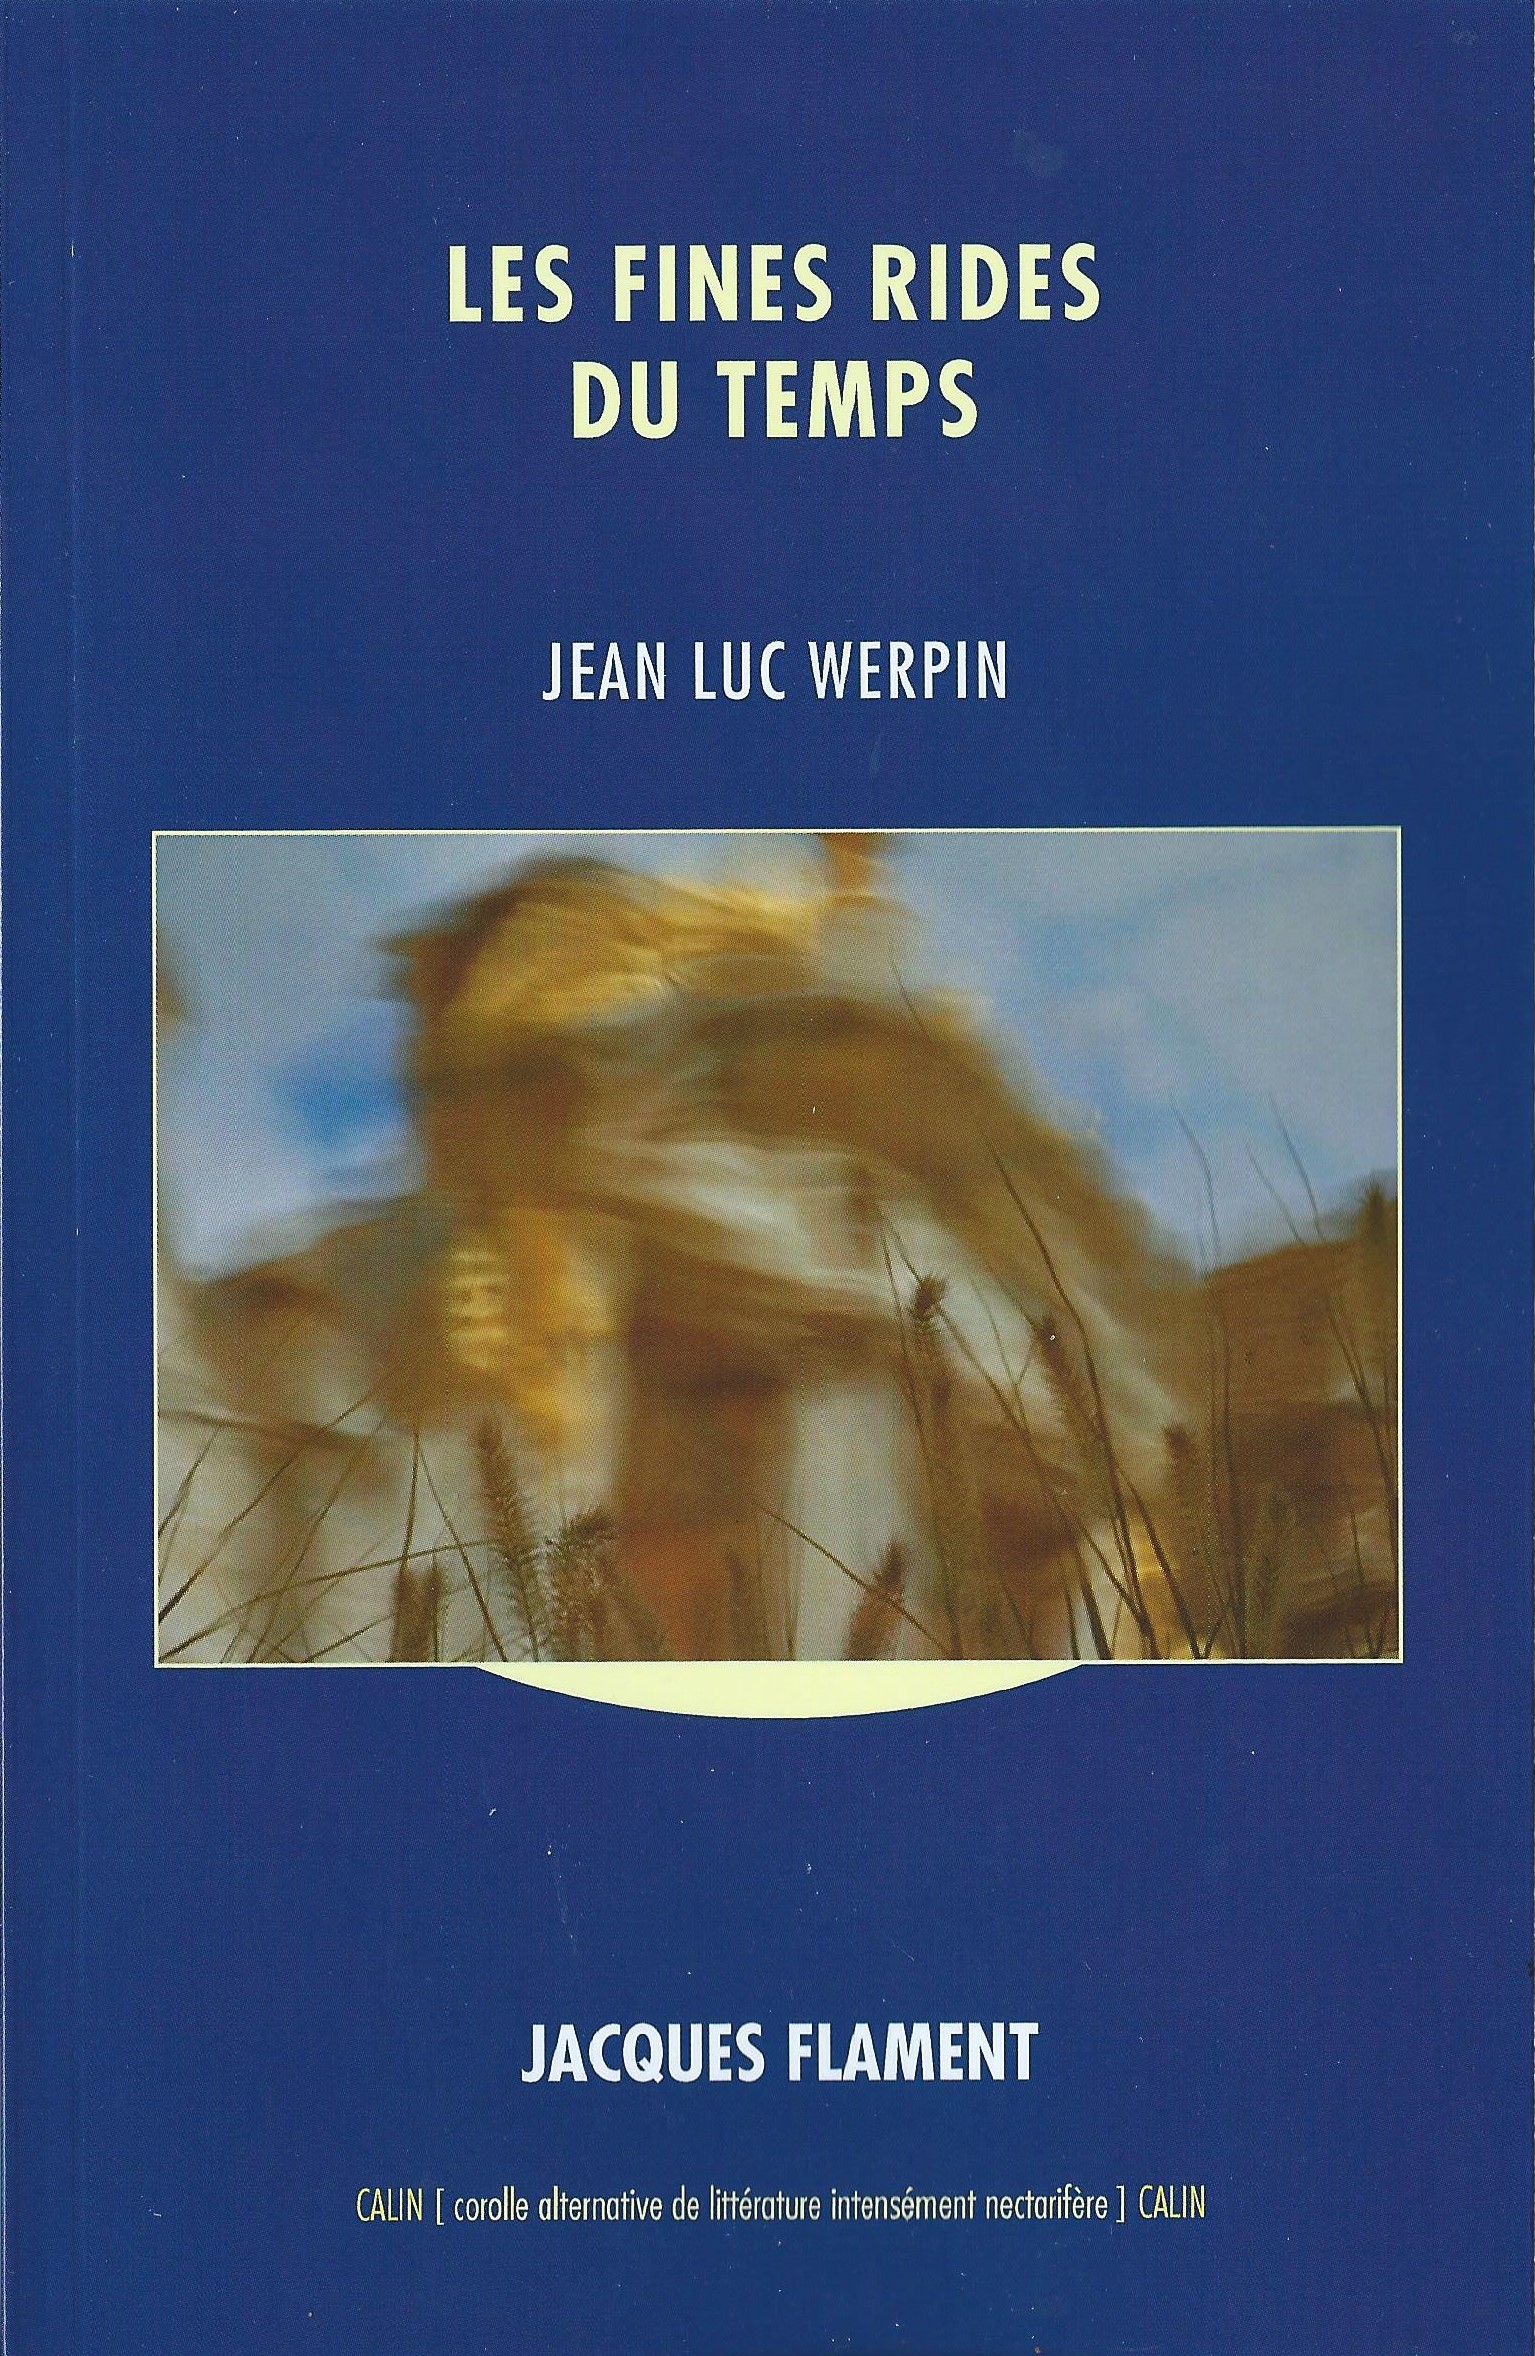 JEAN-LUC WERPIN - Les fines rides du temps